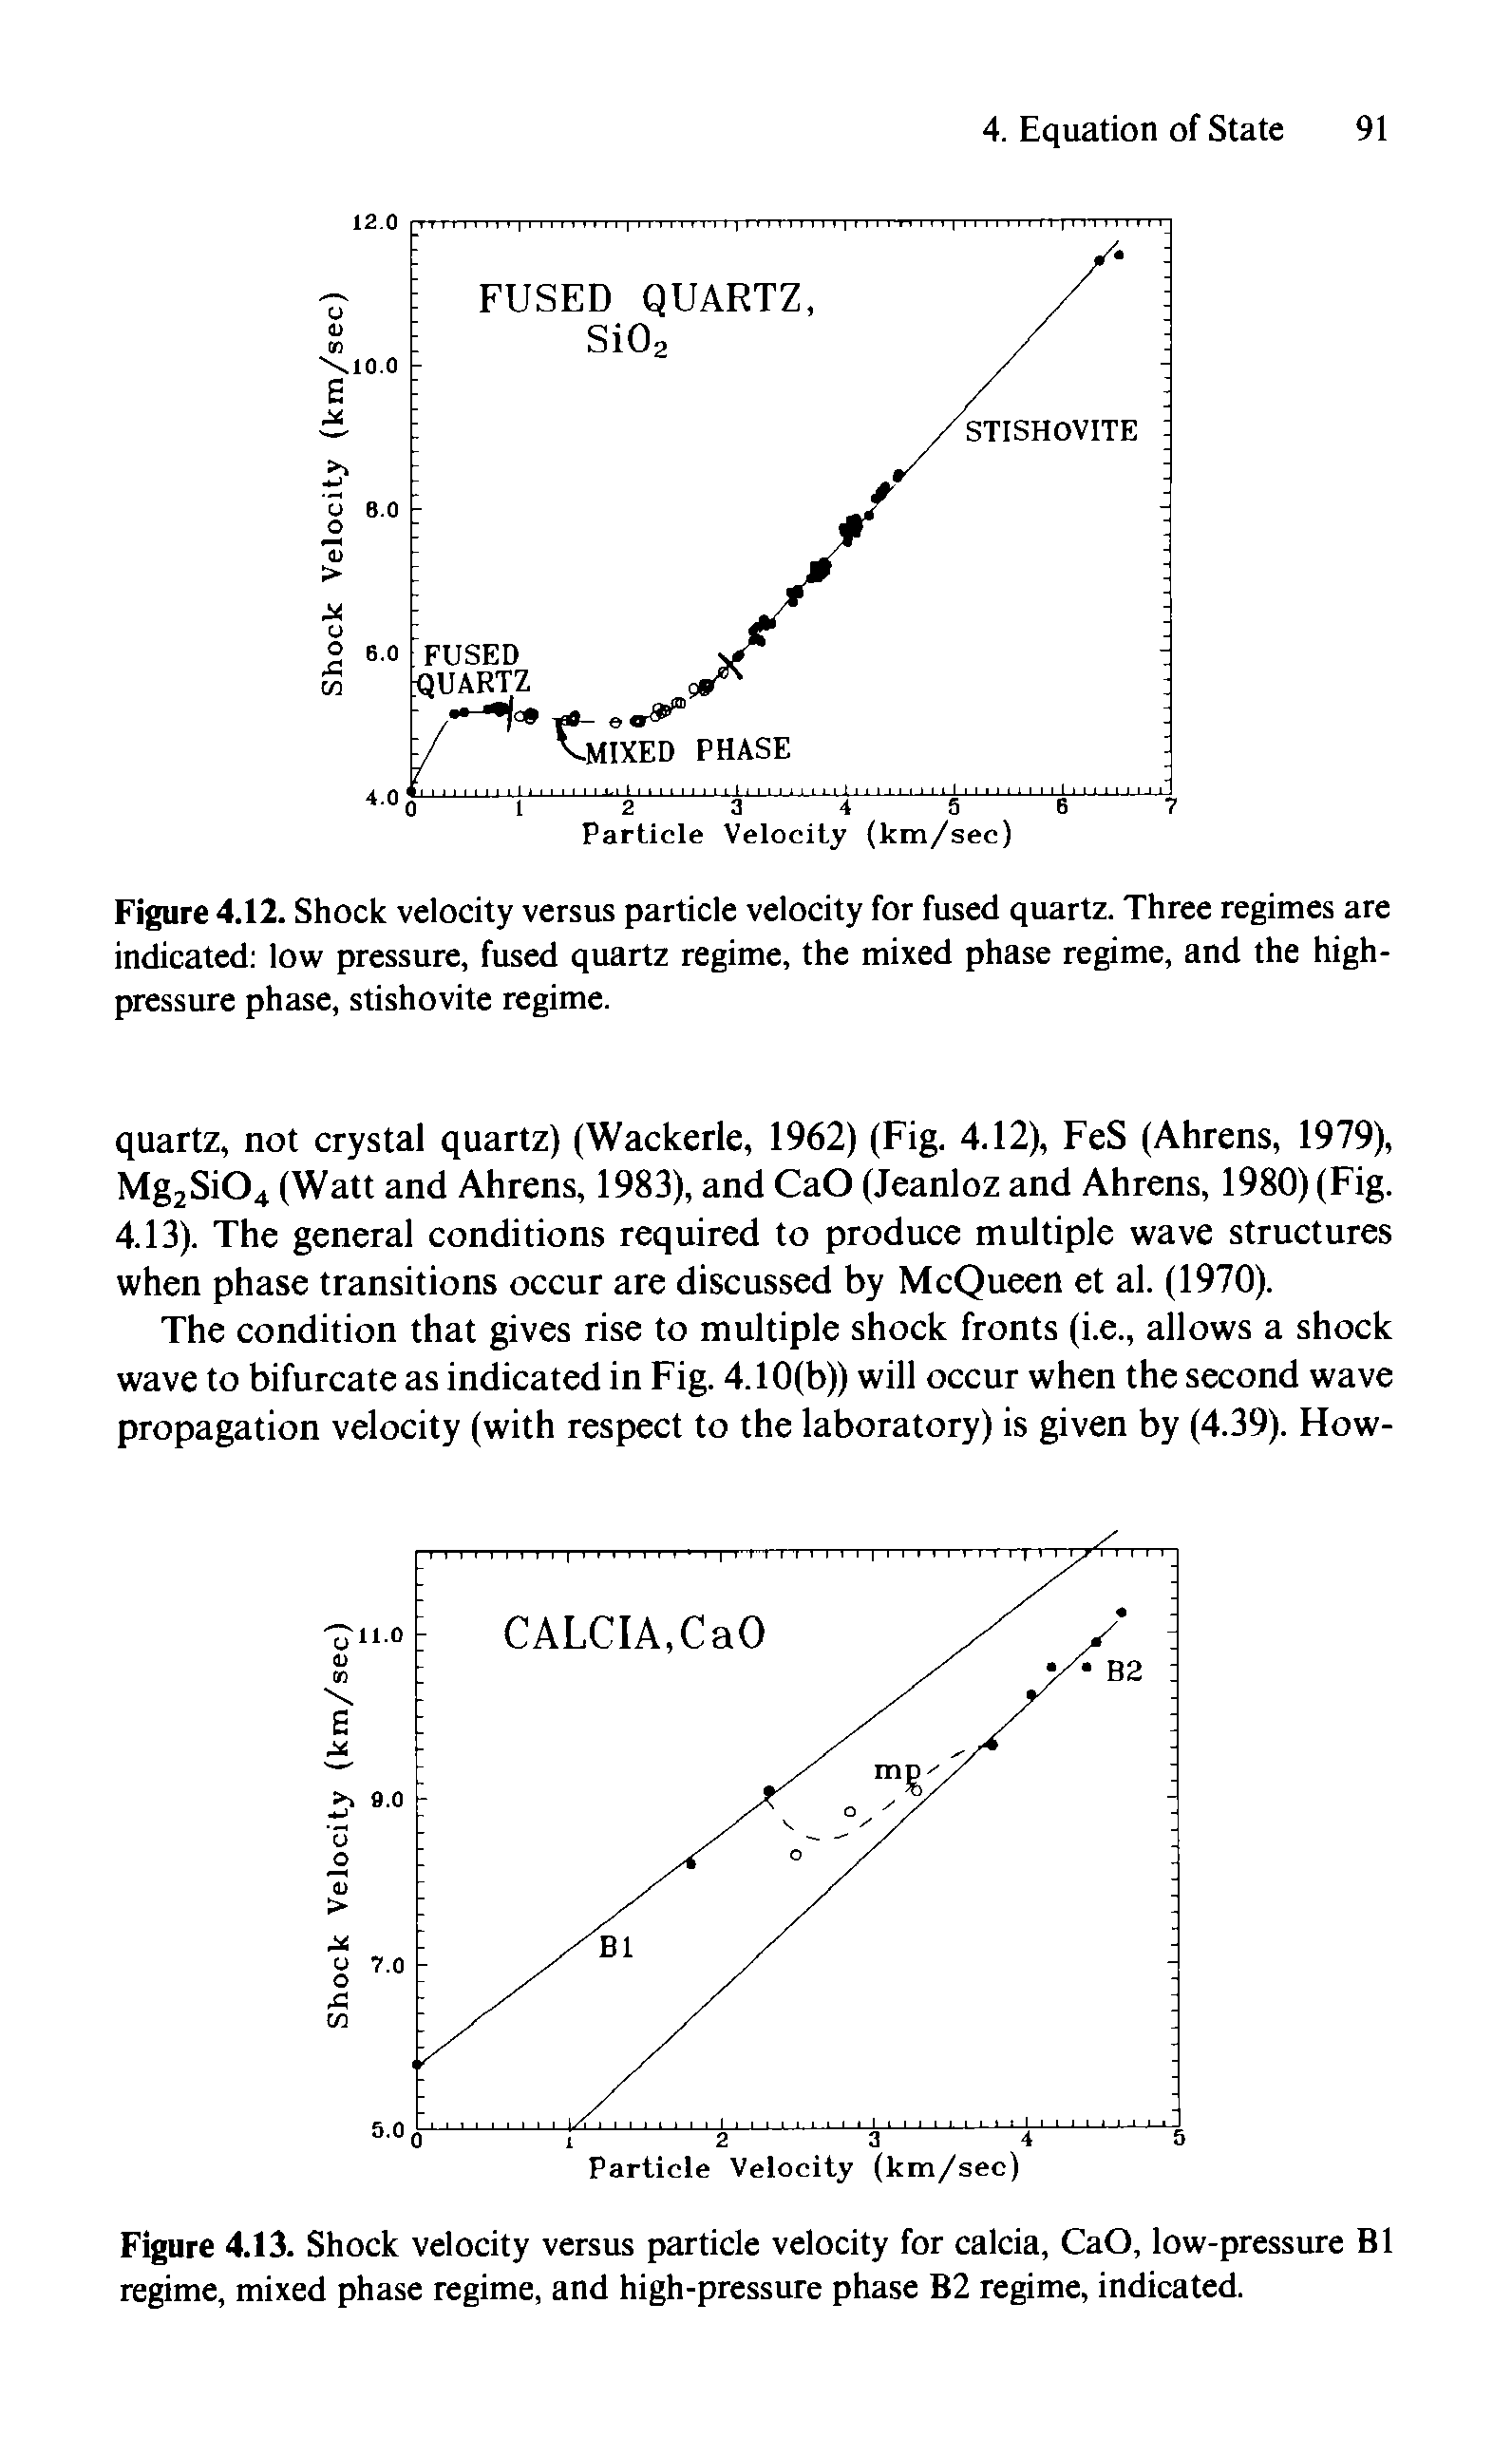 Figure 4.12. Shock velocity versus particle velocity for fused quartz. Three regimes are indicated low pressure, fused quartz regime, the mixed phase regime, and the high-pressure phase, stishovite regime.